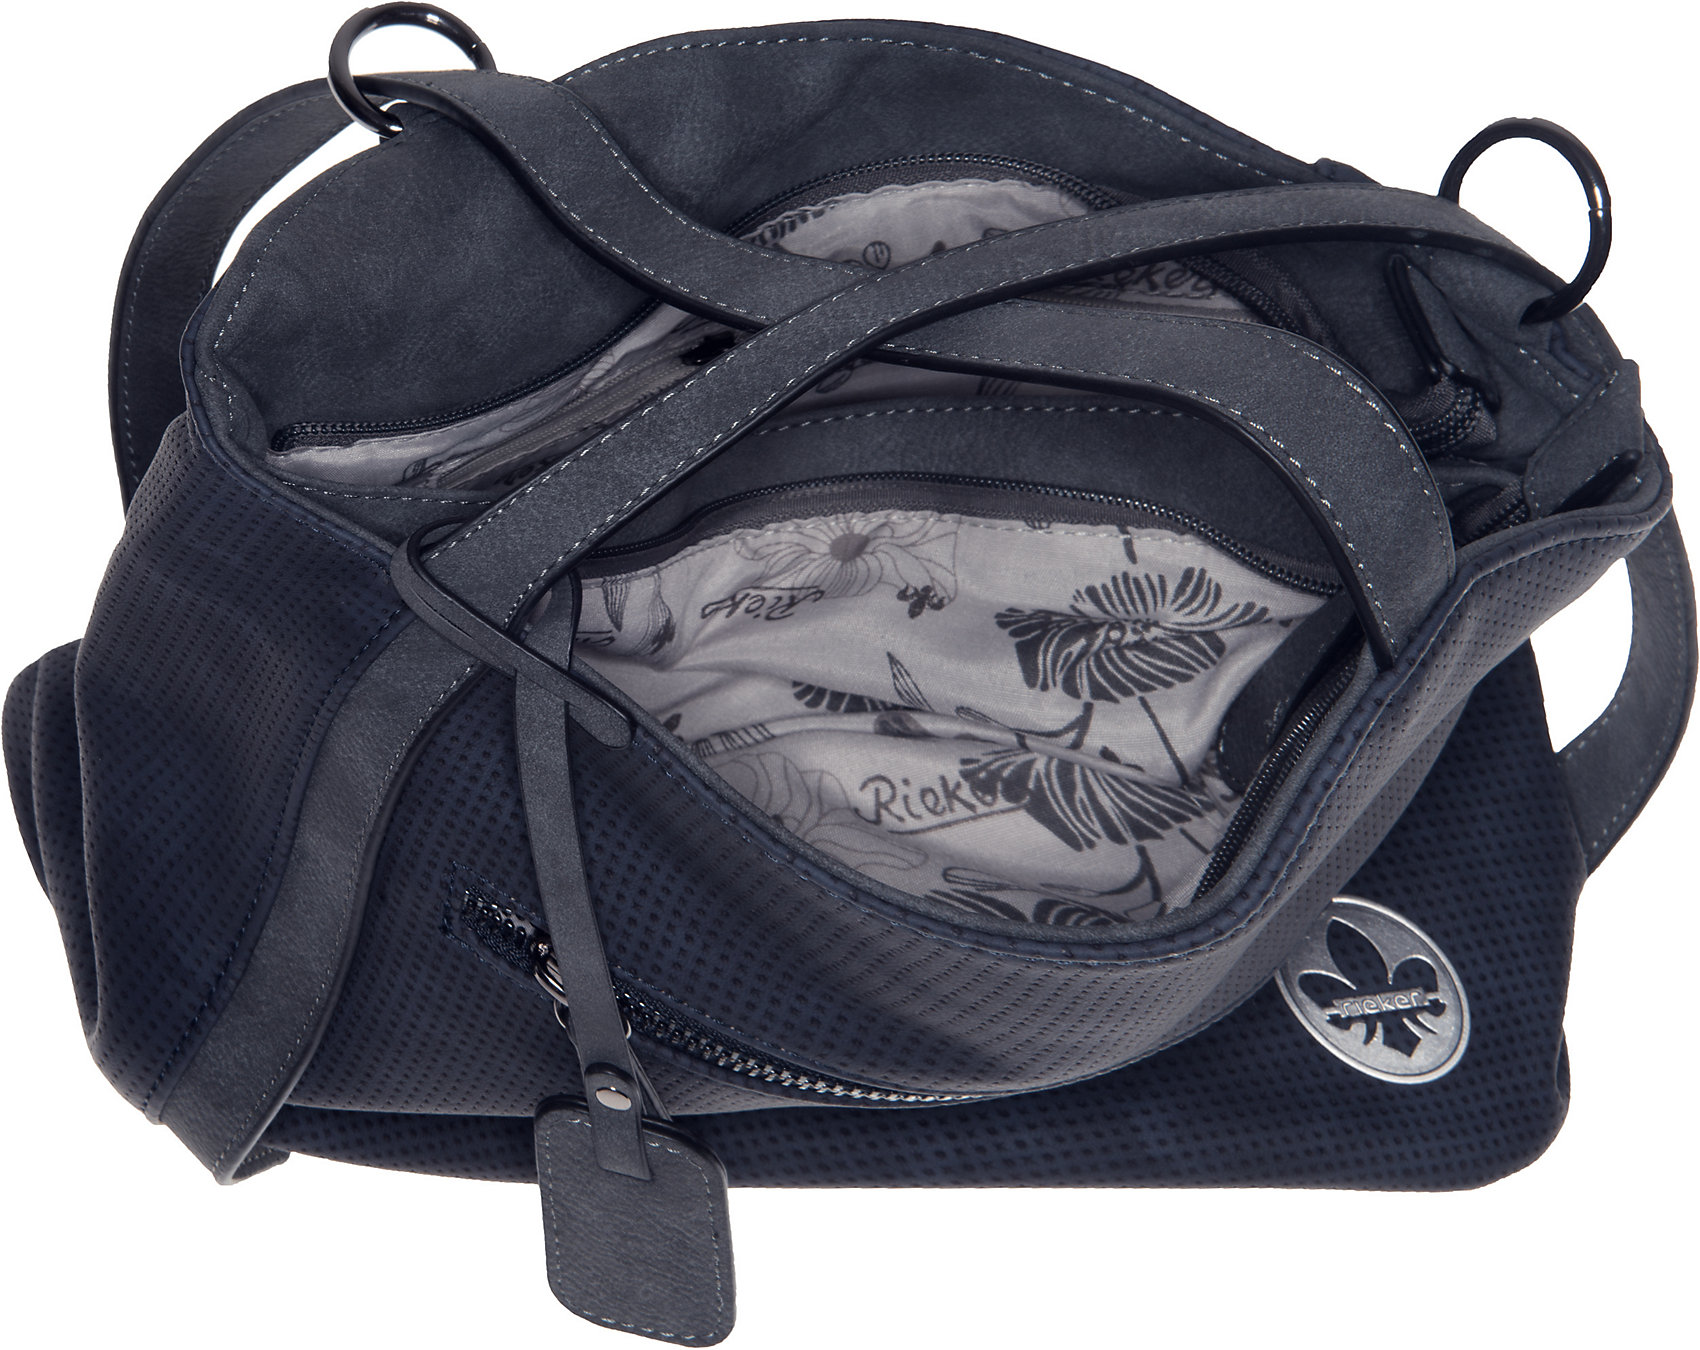 Neu rieker Handtasche 11552580 für Damen anthrazit | eBay